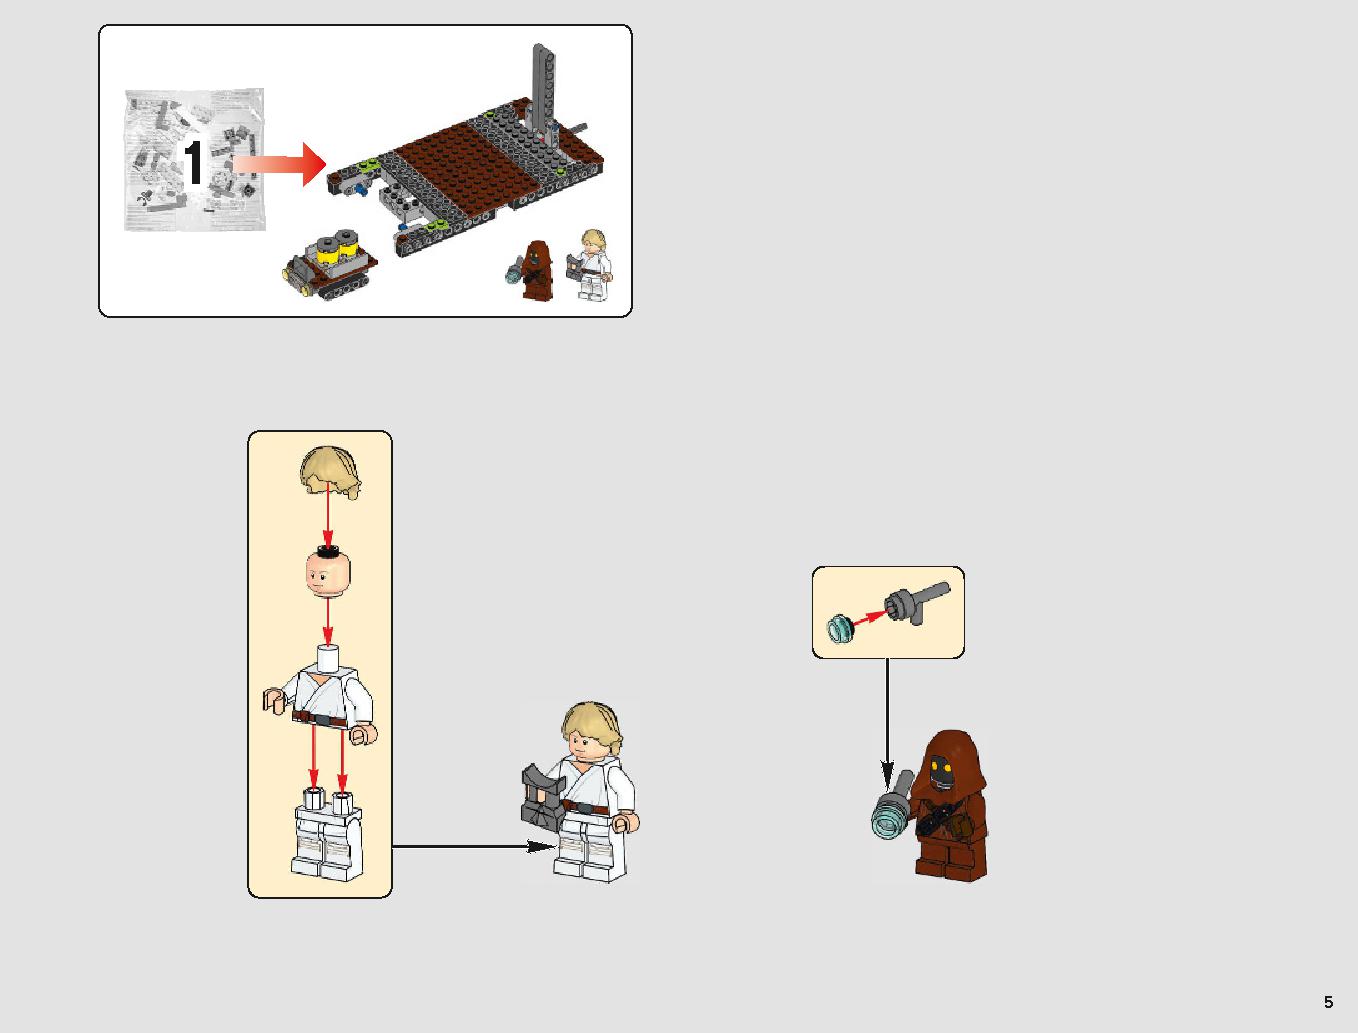 サンドクローラー 75220 レゴの商品情報 レゴの説明書・組立方法 5 page